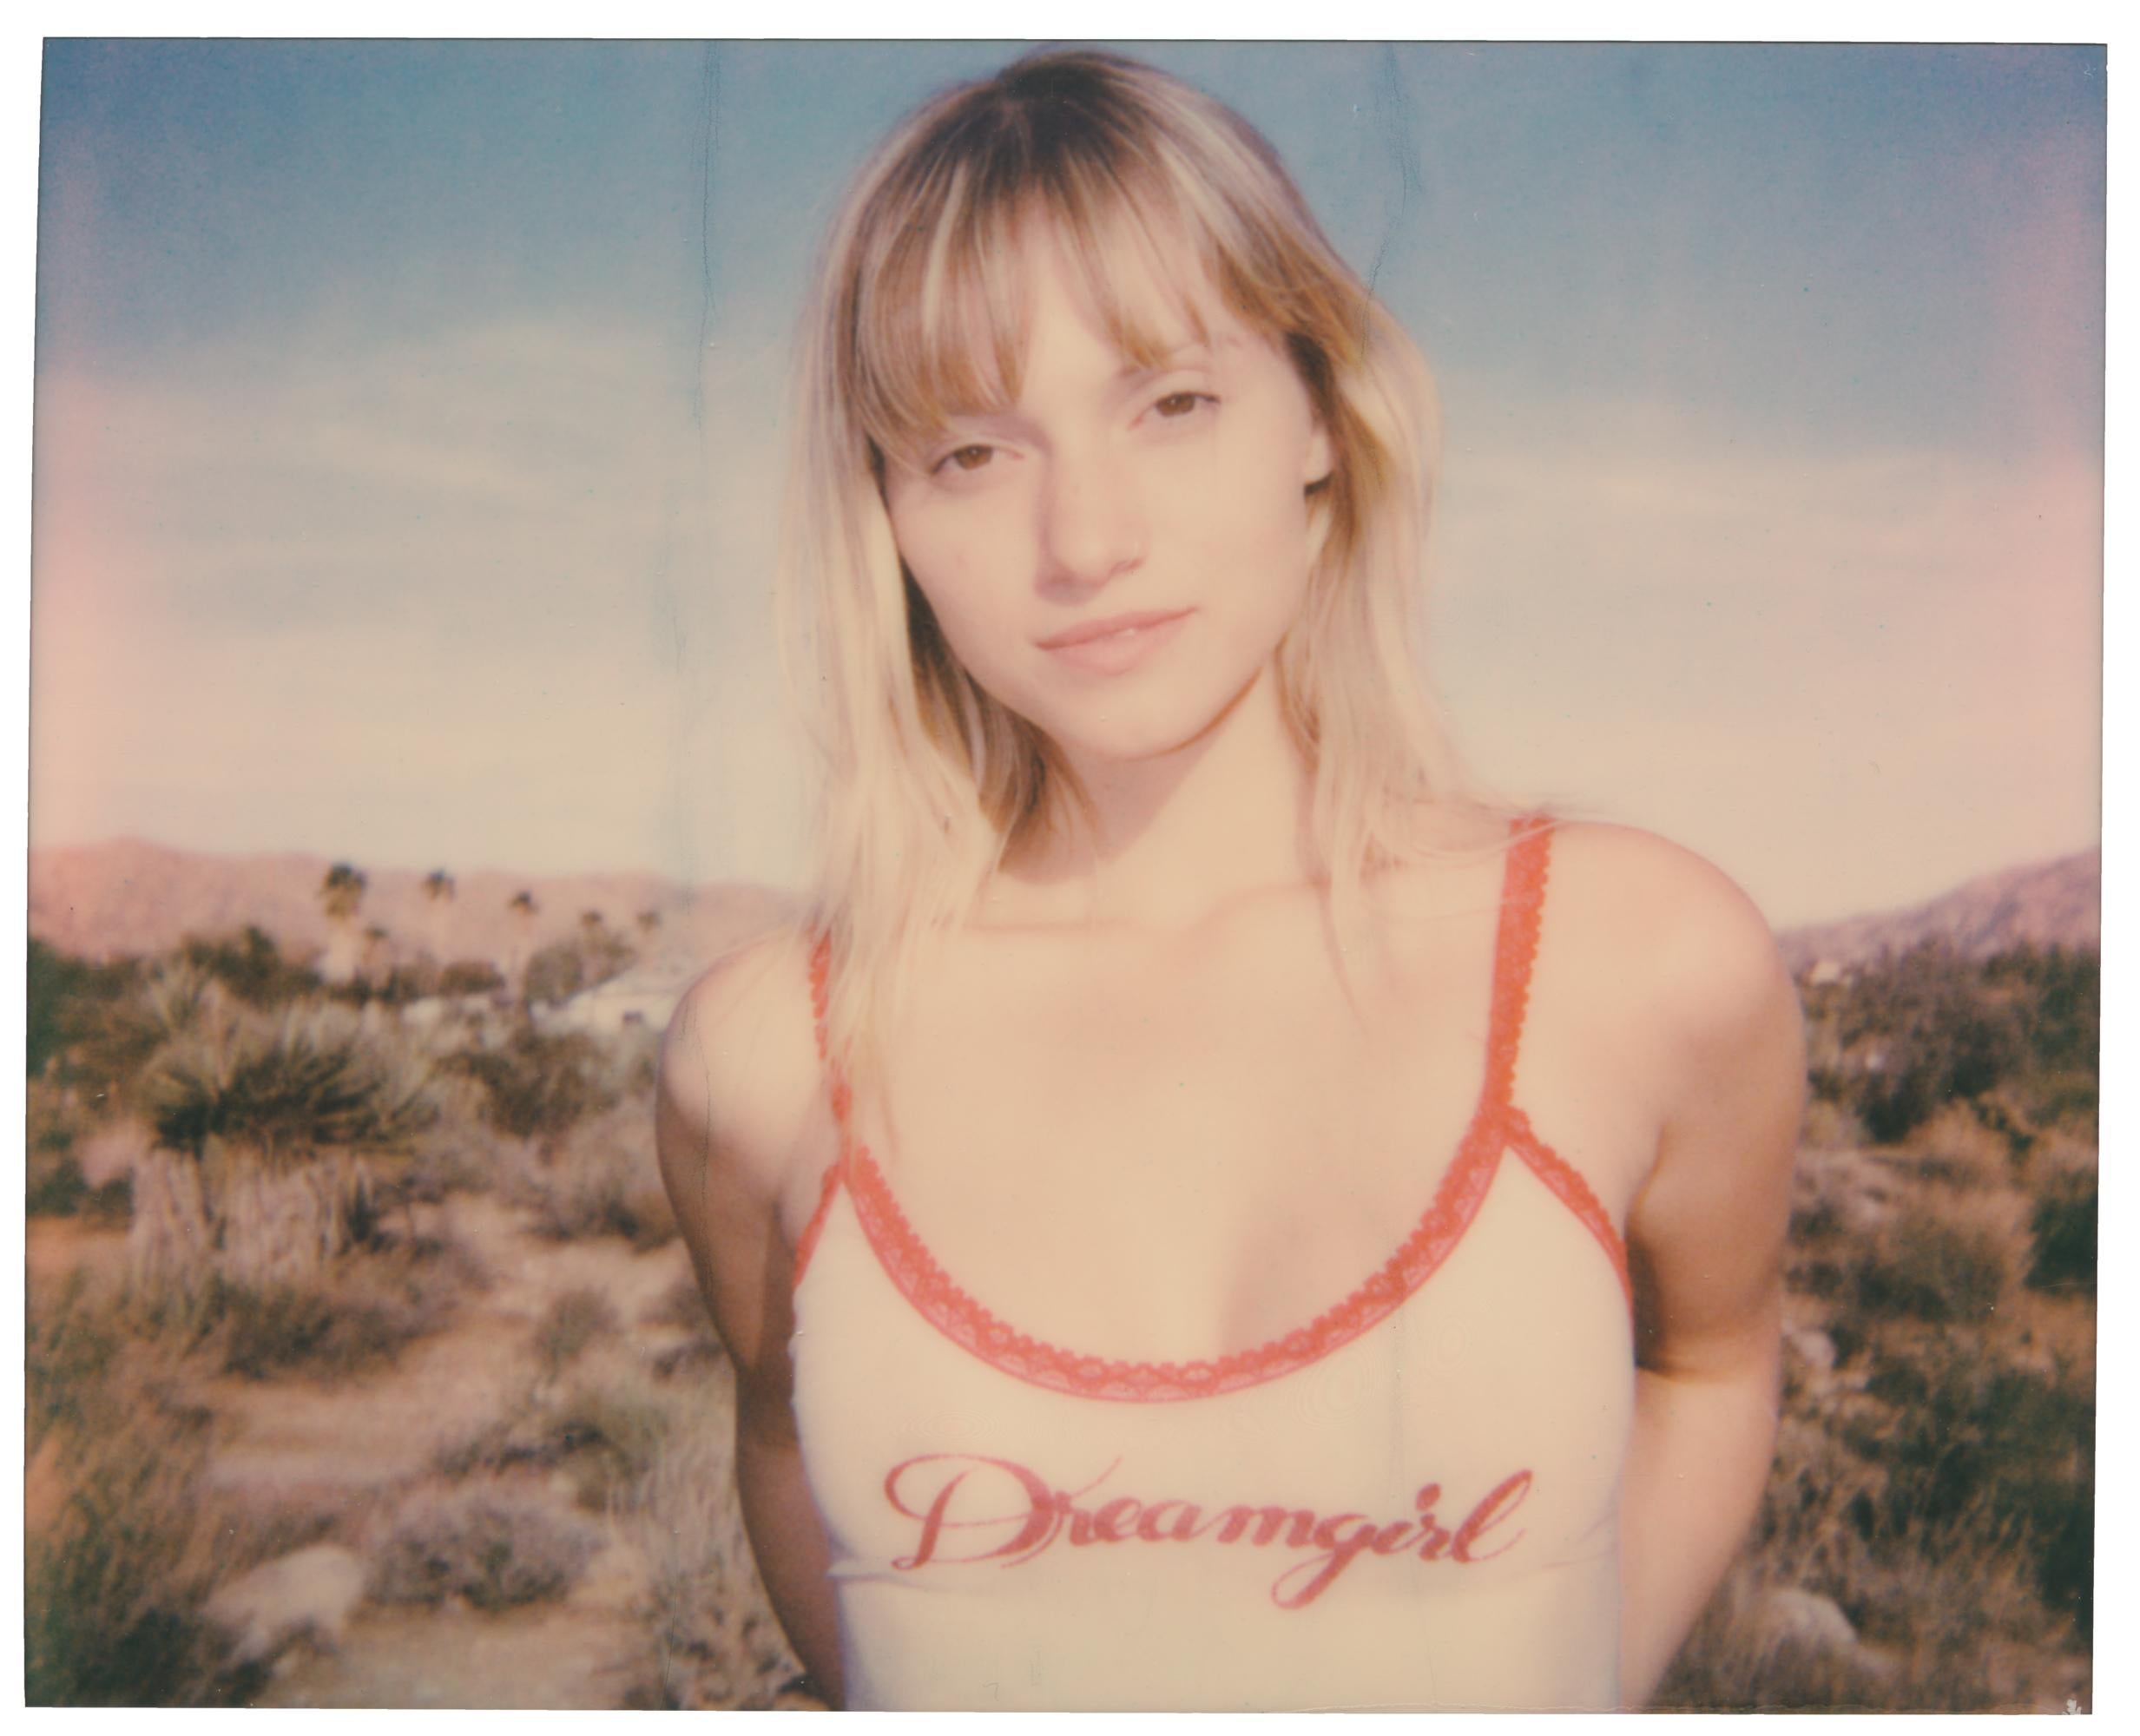 Color Photograph Stefanie Schneider - Dreamgirl (Des filles et des filles et parfois des bites)